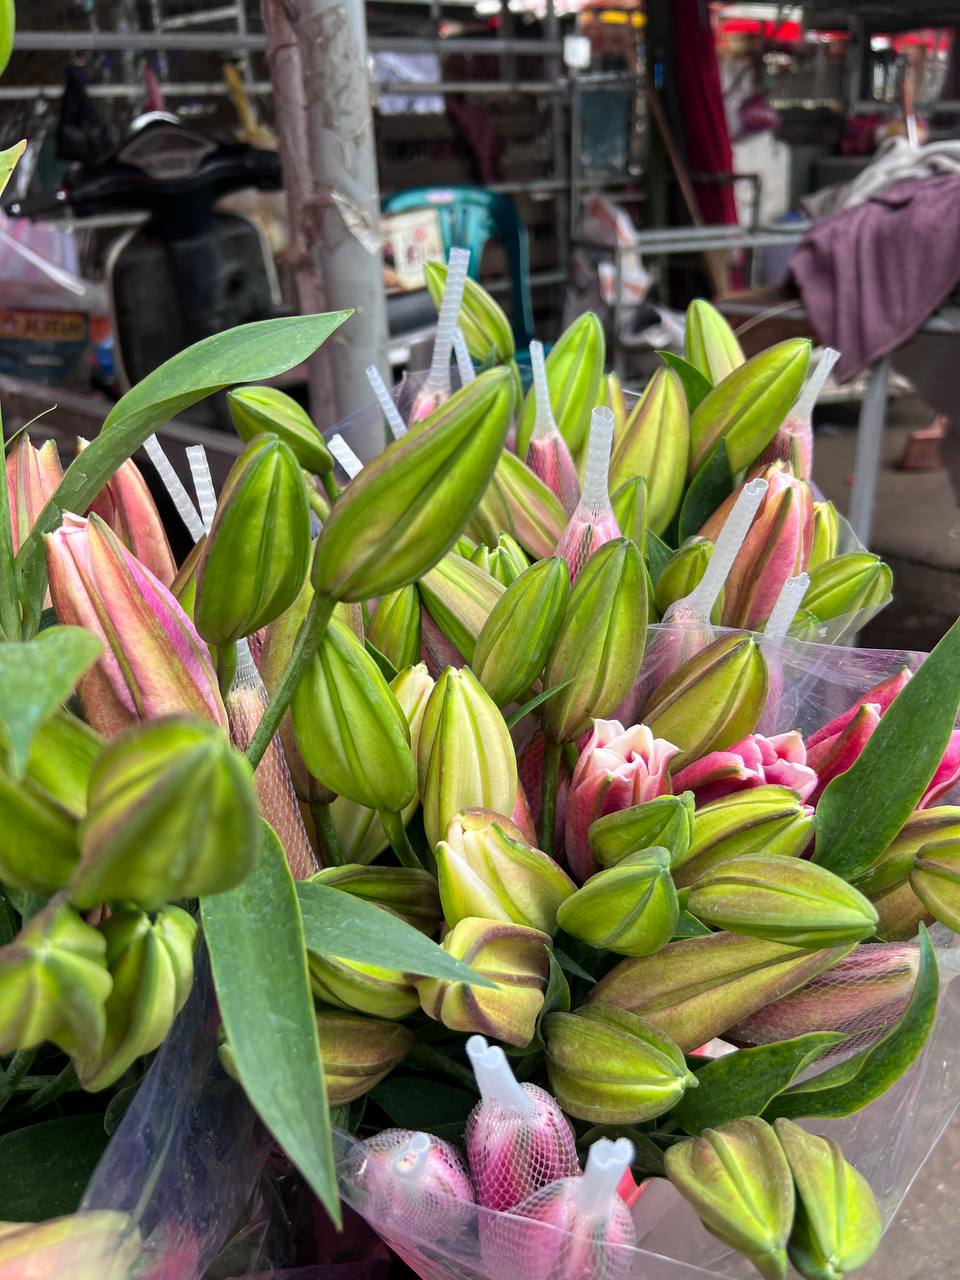 Mách bạn bí kíp mua hoa chợ Quảng Bá giá rẻ mà vẫn đẹp - Ảnh 12.